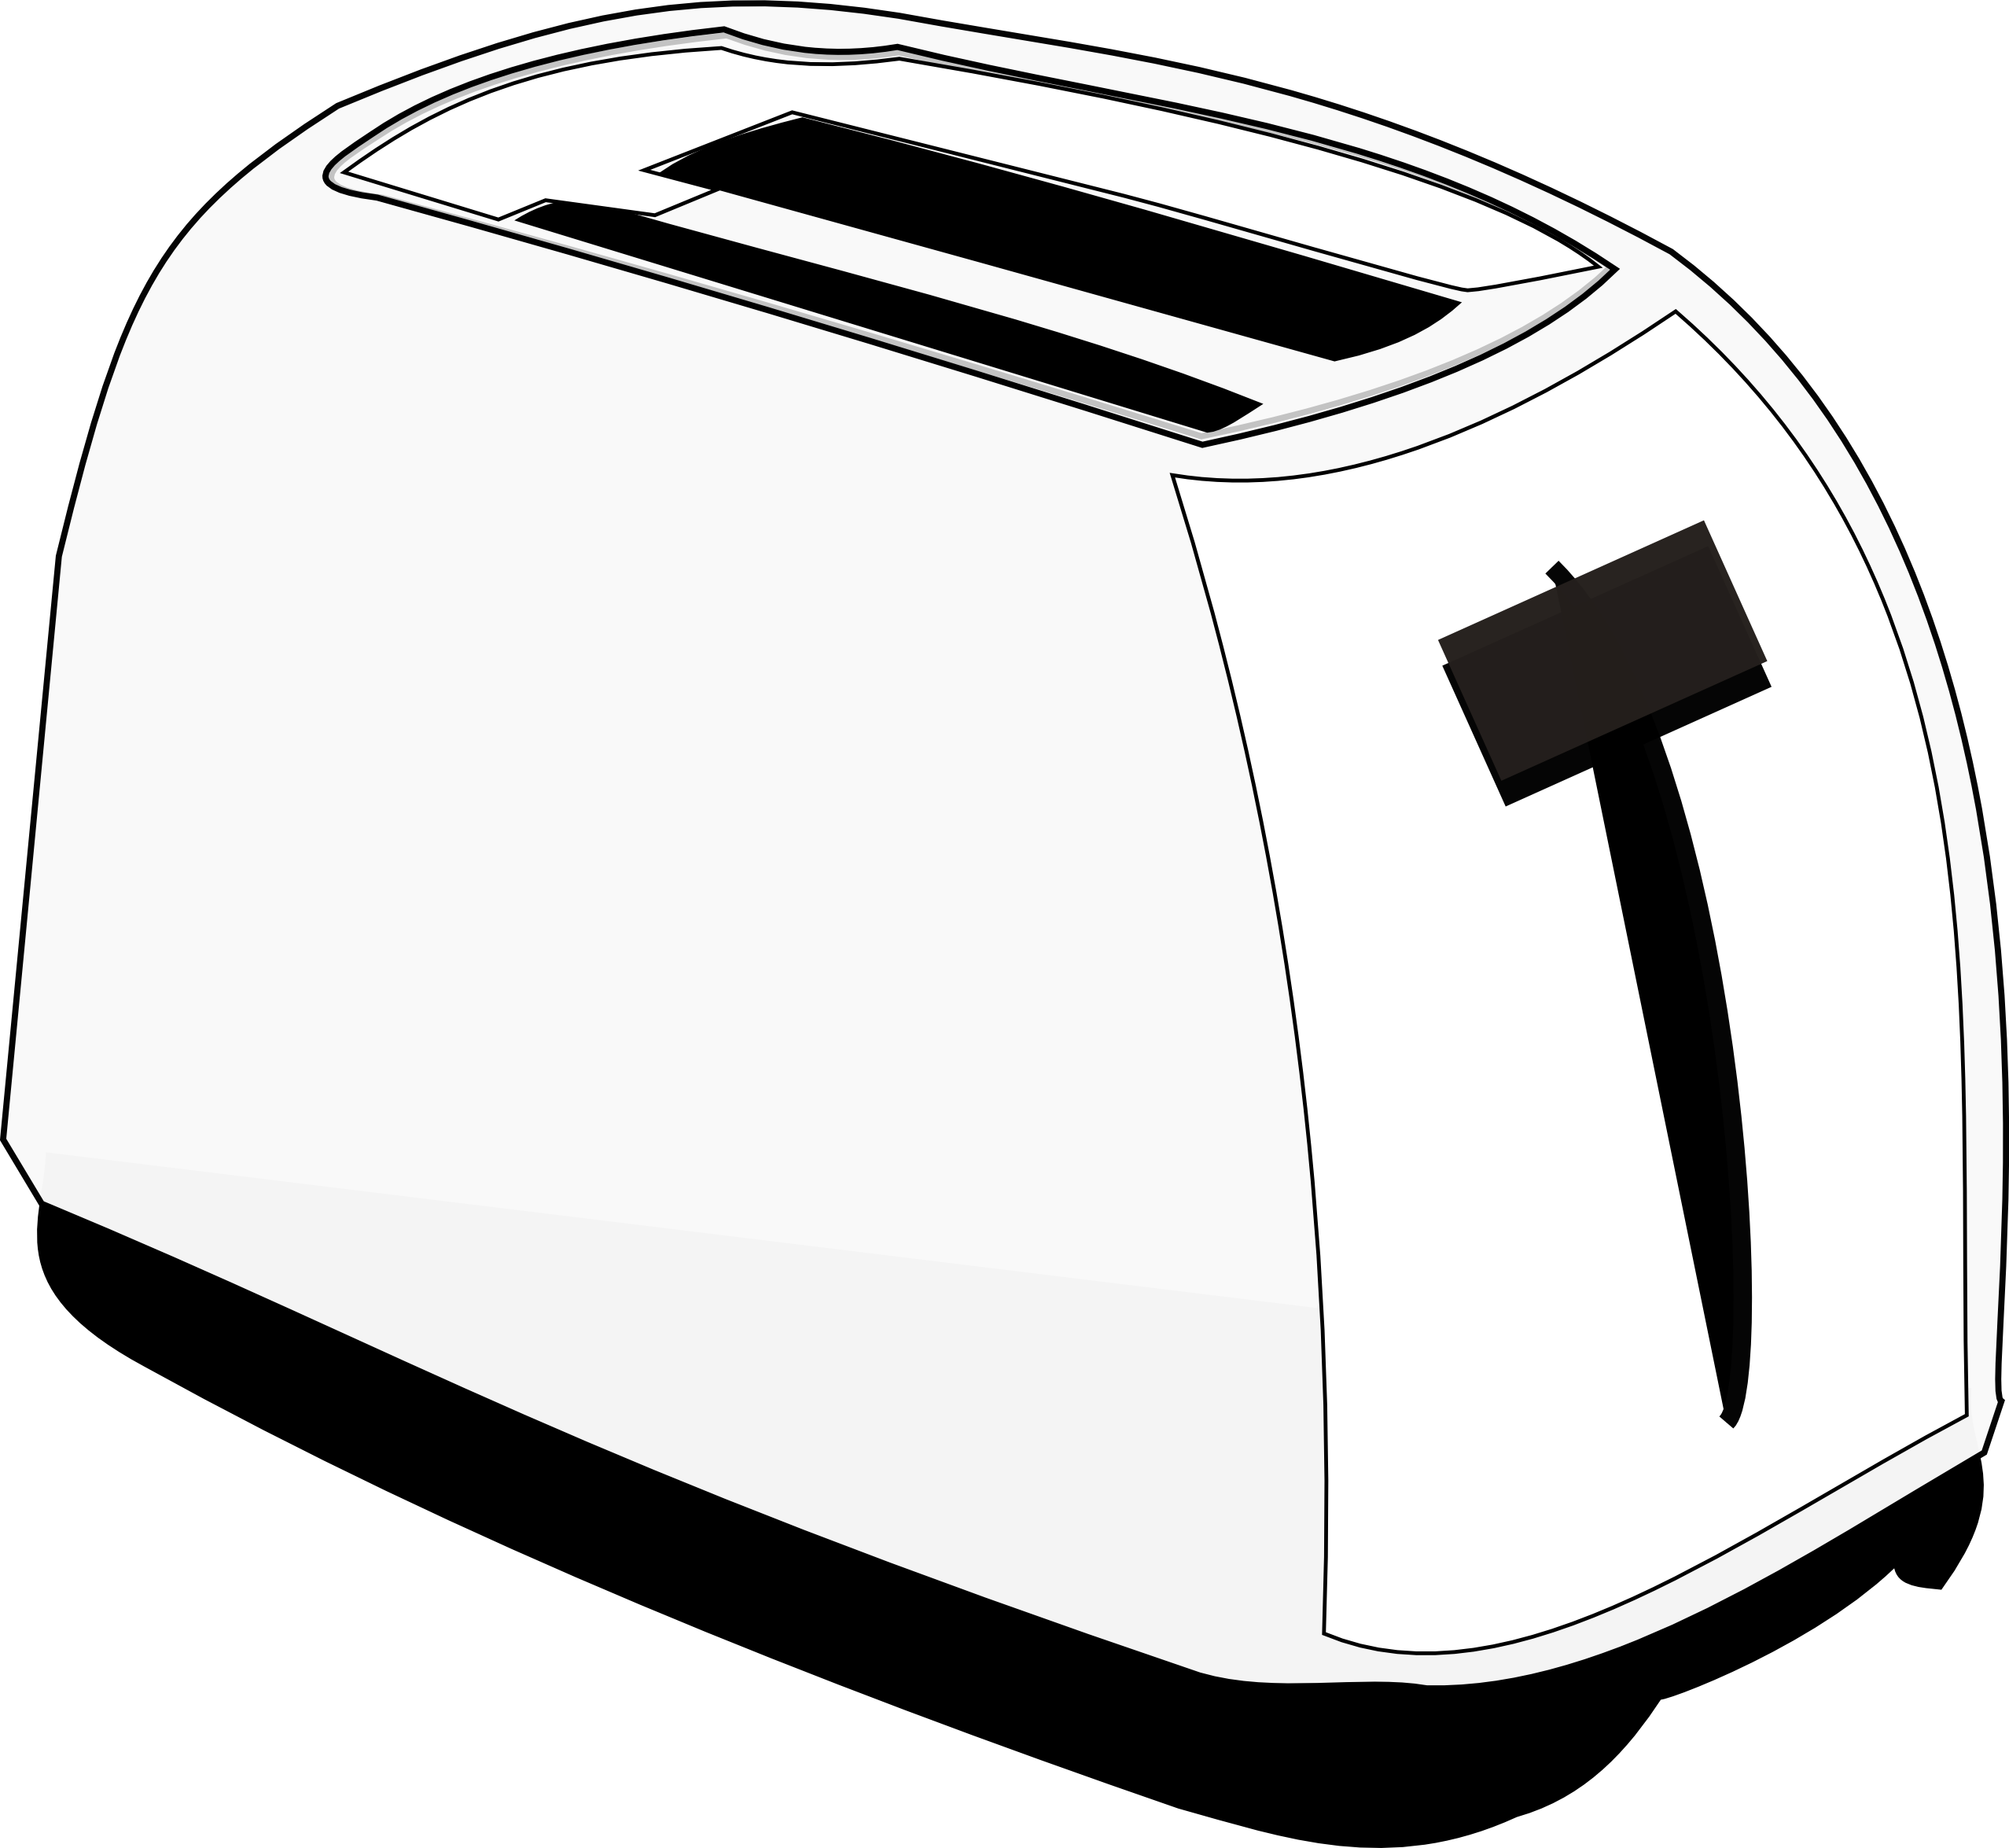 Breathtaking white toaster : White.putiloan